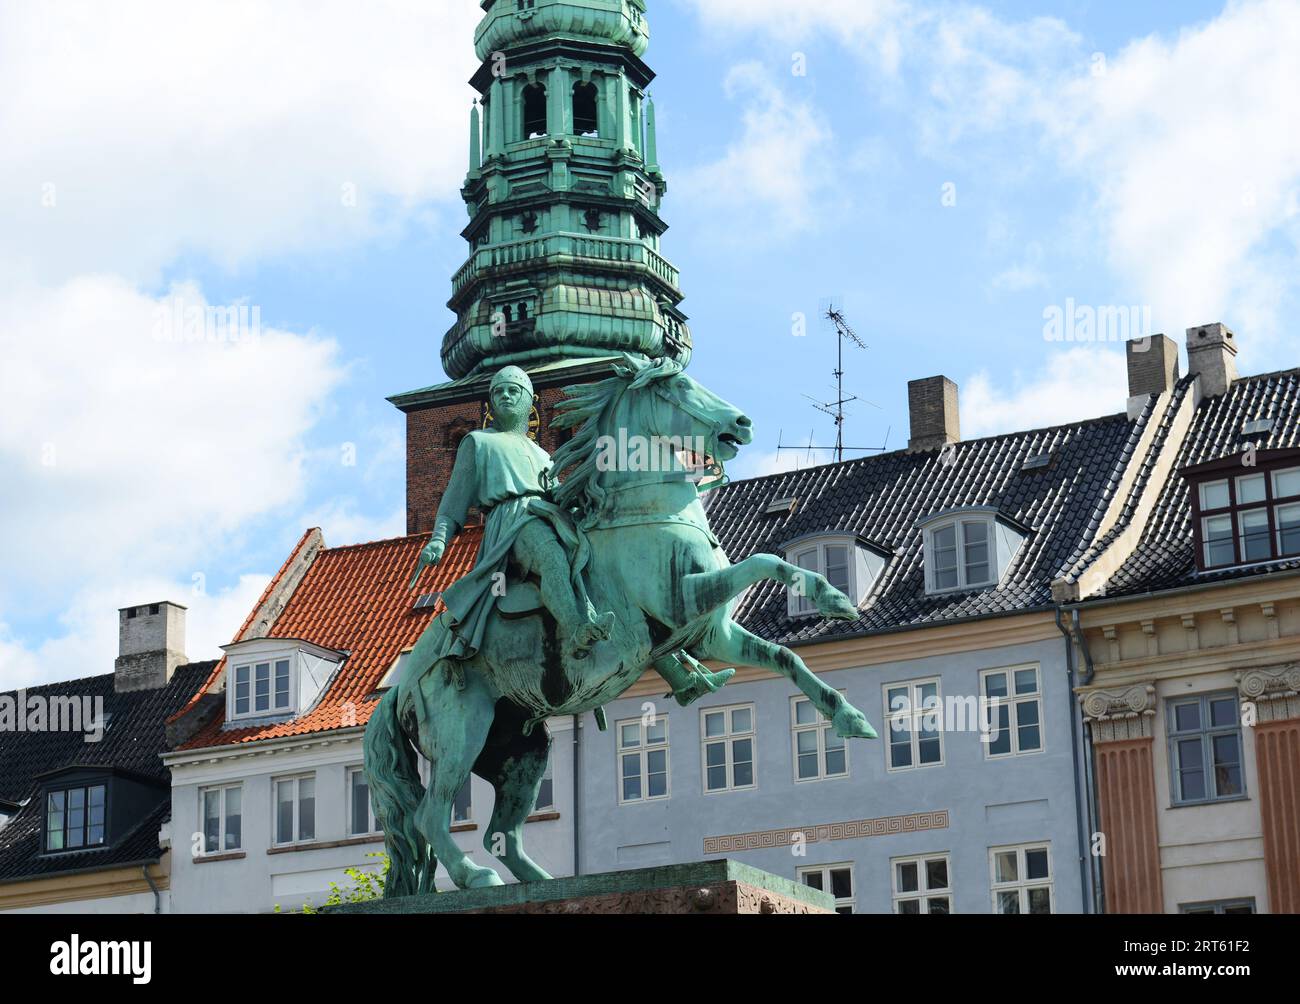 La statue équestre de l'évêque Absalon sur Højbro Plads, Copenhague, Danemark. Banque D'Images